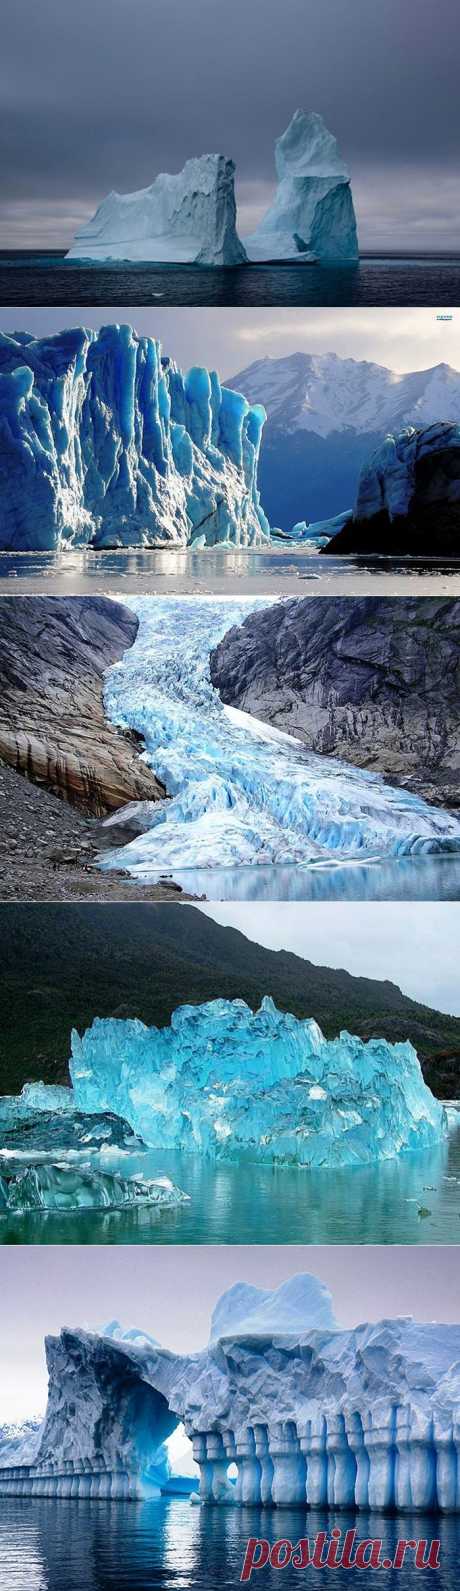 Айсберги и ледники - невозмутимая величественность и красота